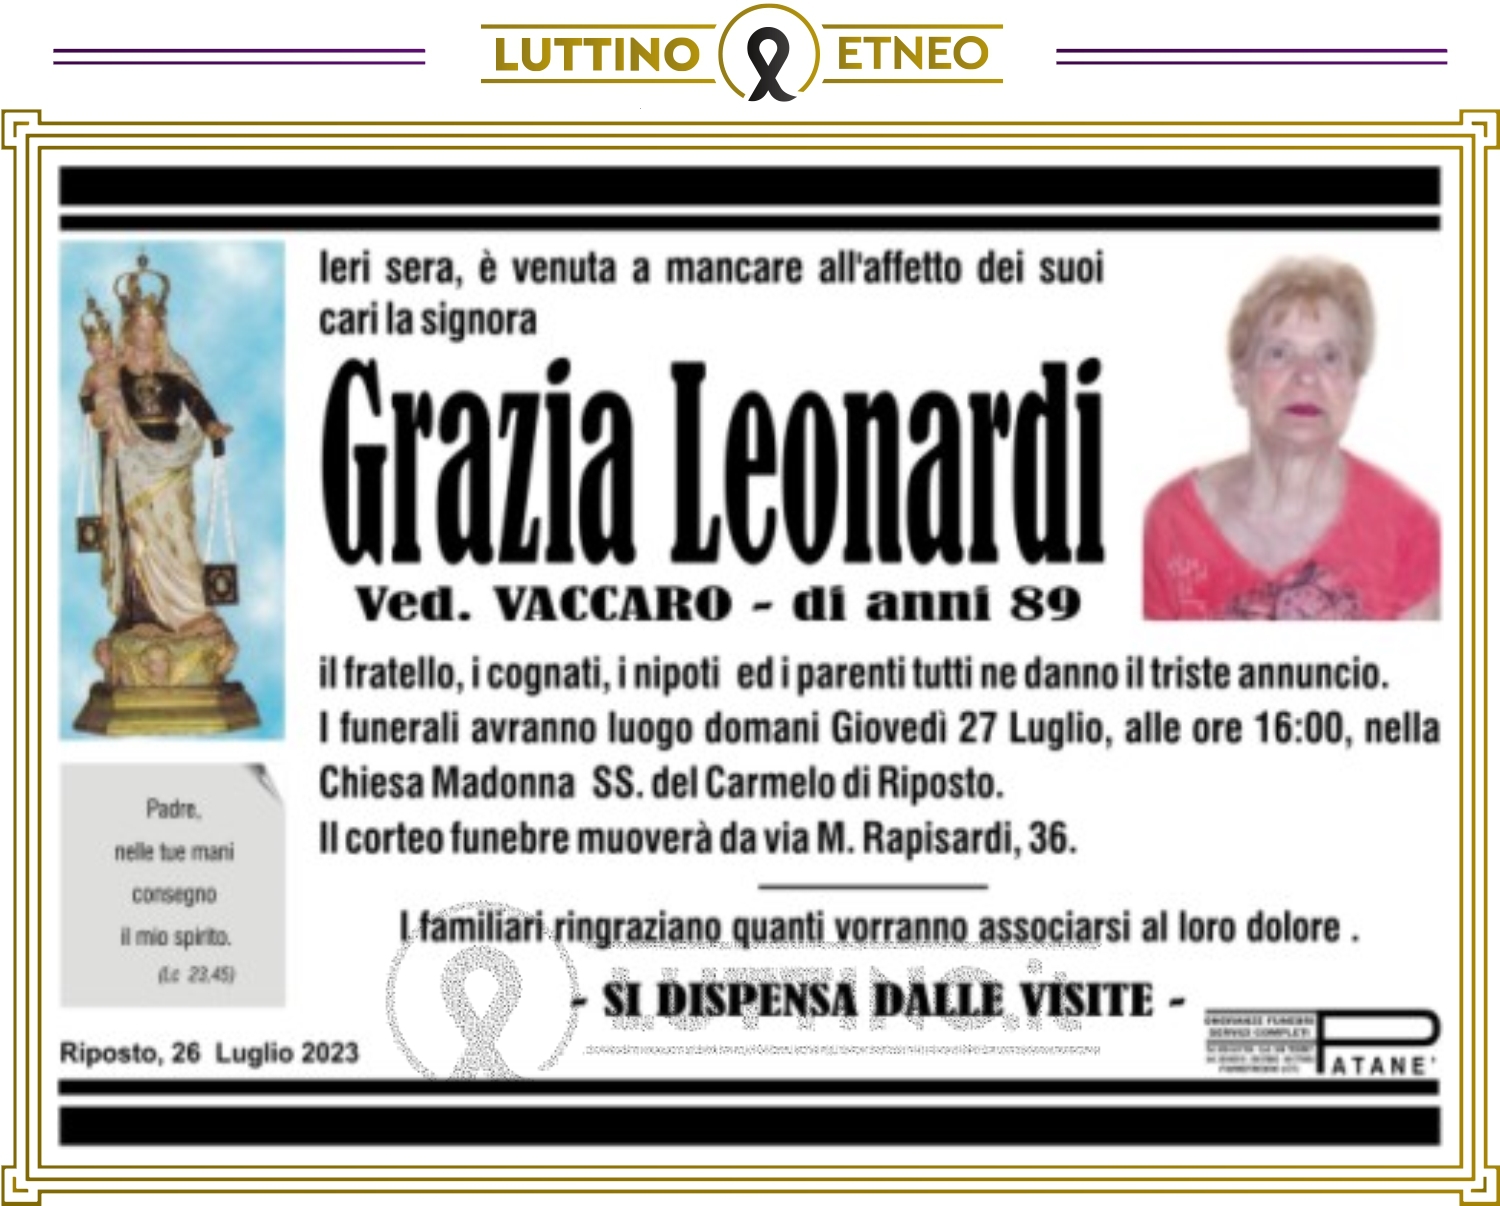 Grazia Leonardi